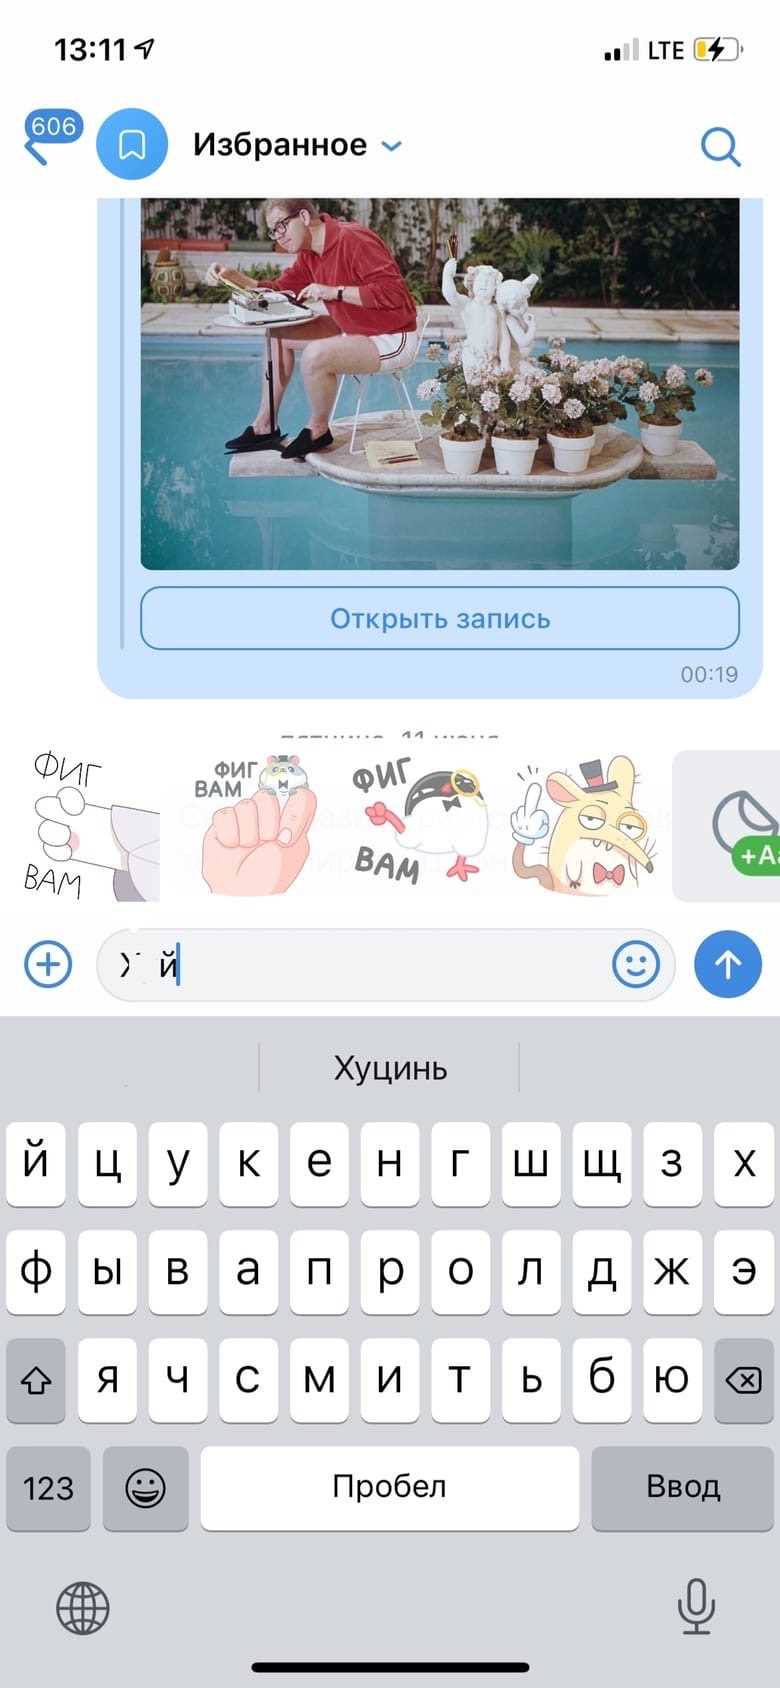 «ВКонтакте» будет заменять оскучившиеся смайлы и эмоции веселыми стикерами